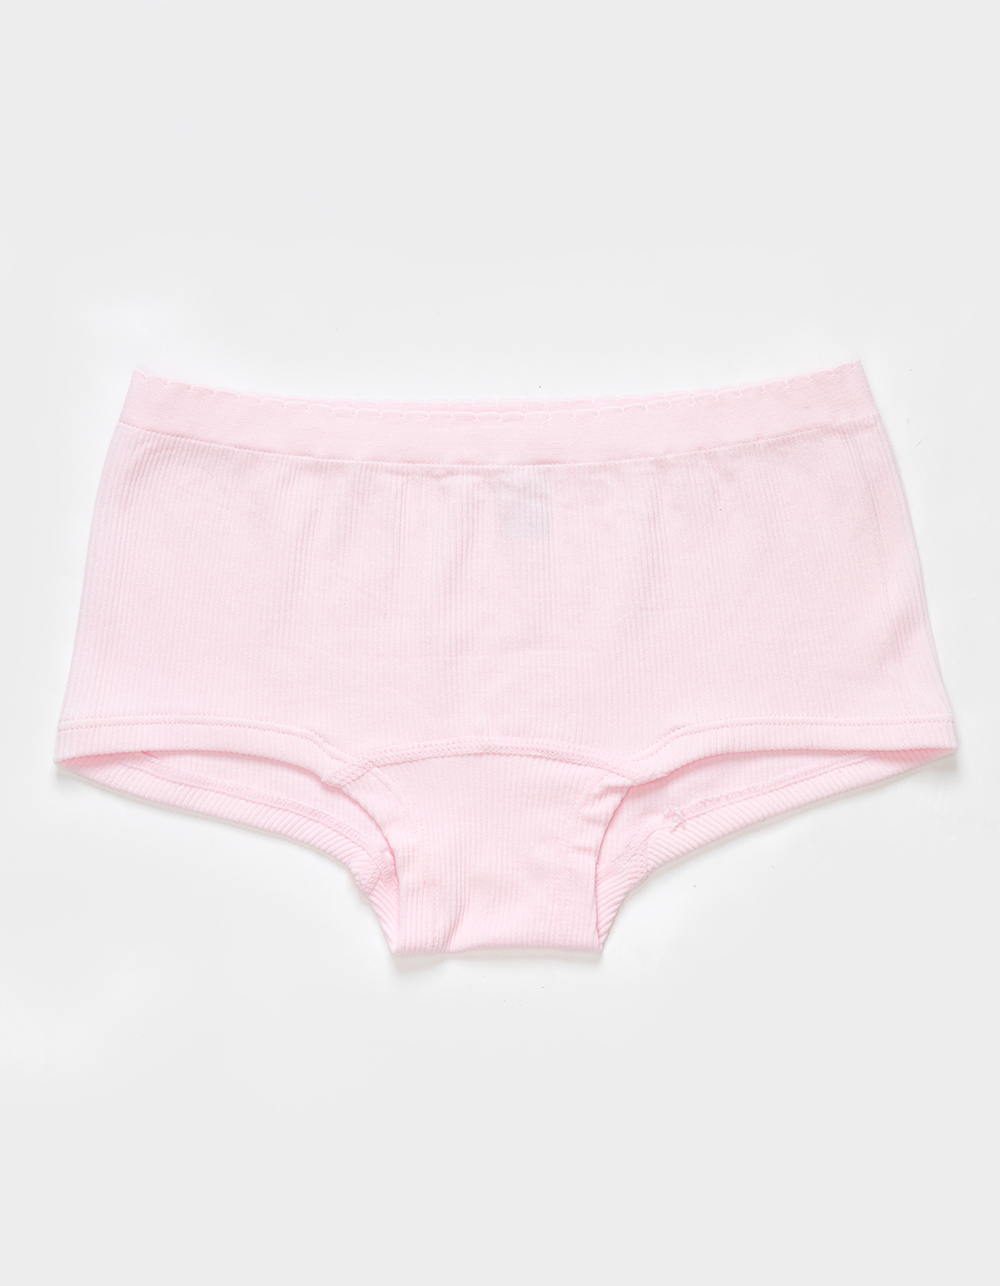 Juicy Couture 5-Pack Logo Boyshort Panties on SALE